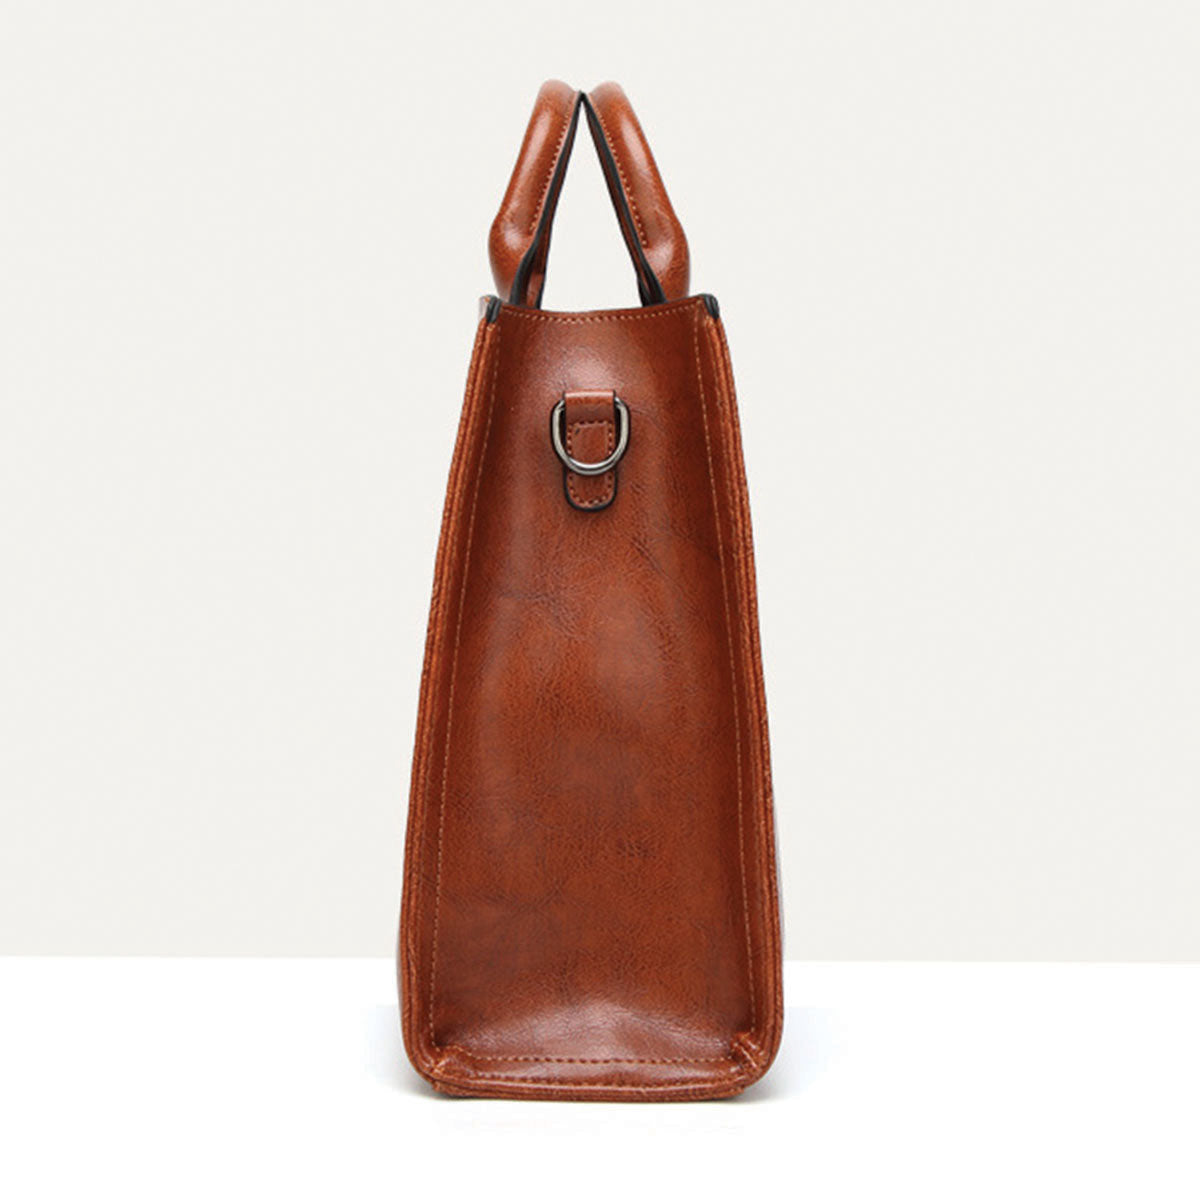 Your Best Companion - Bearded Collie Luxury Handbag V1